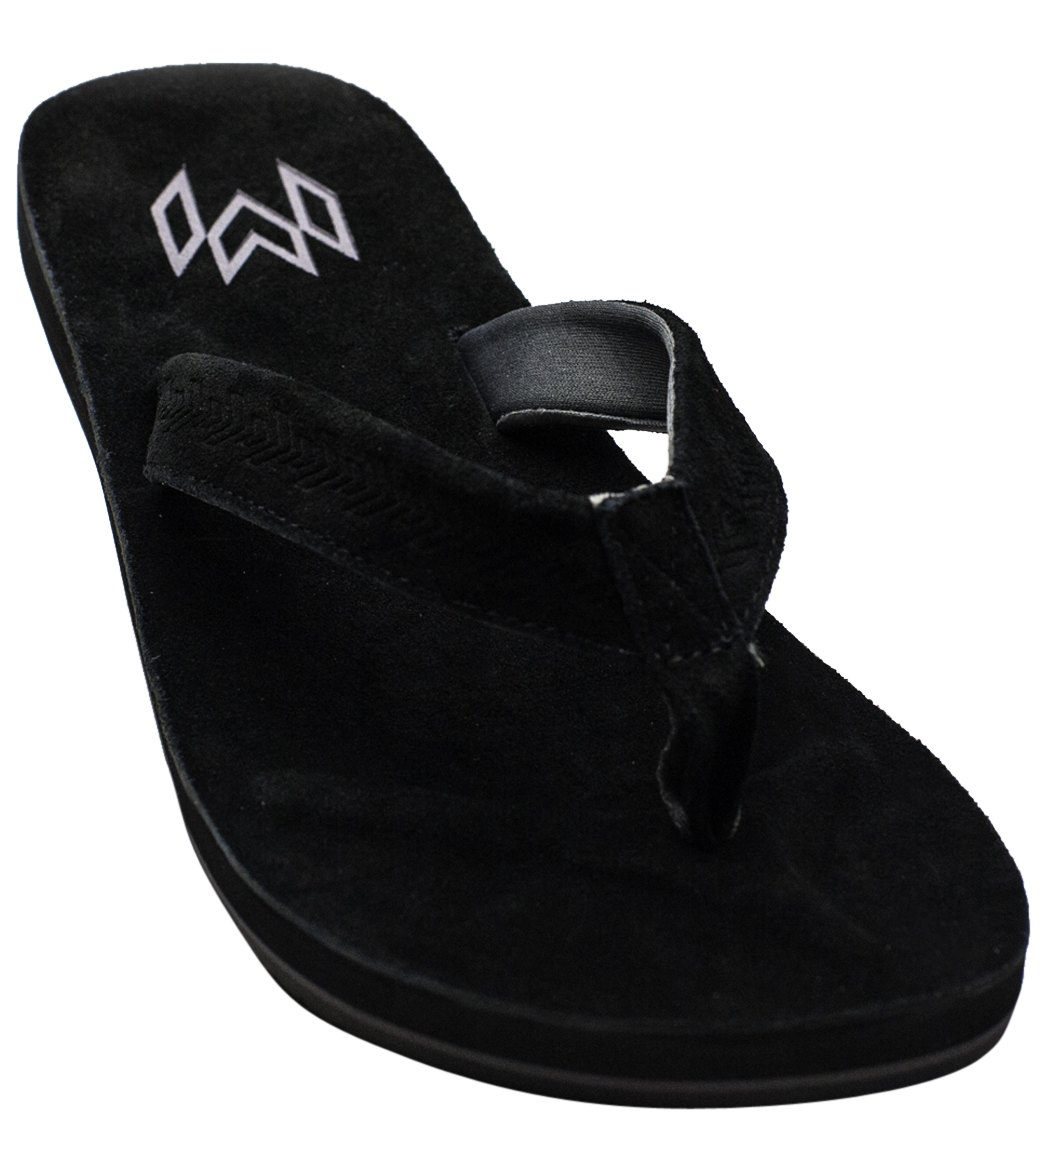 Malvados Men's Jack Leather Flip Flop - Onyx 11/12 - Swimoutlet.com